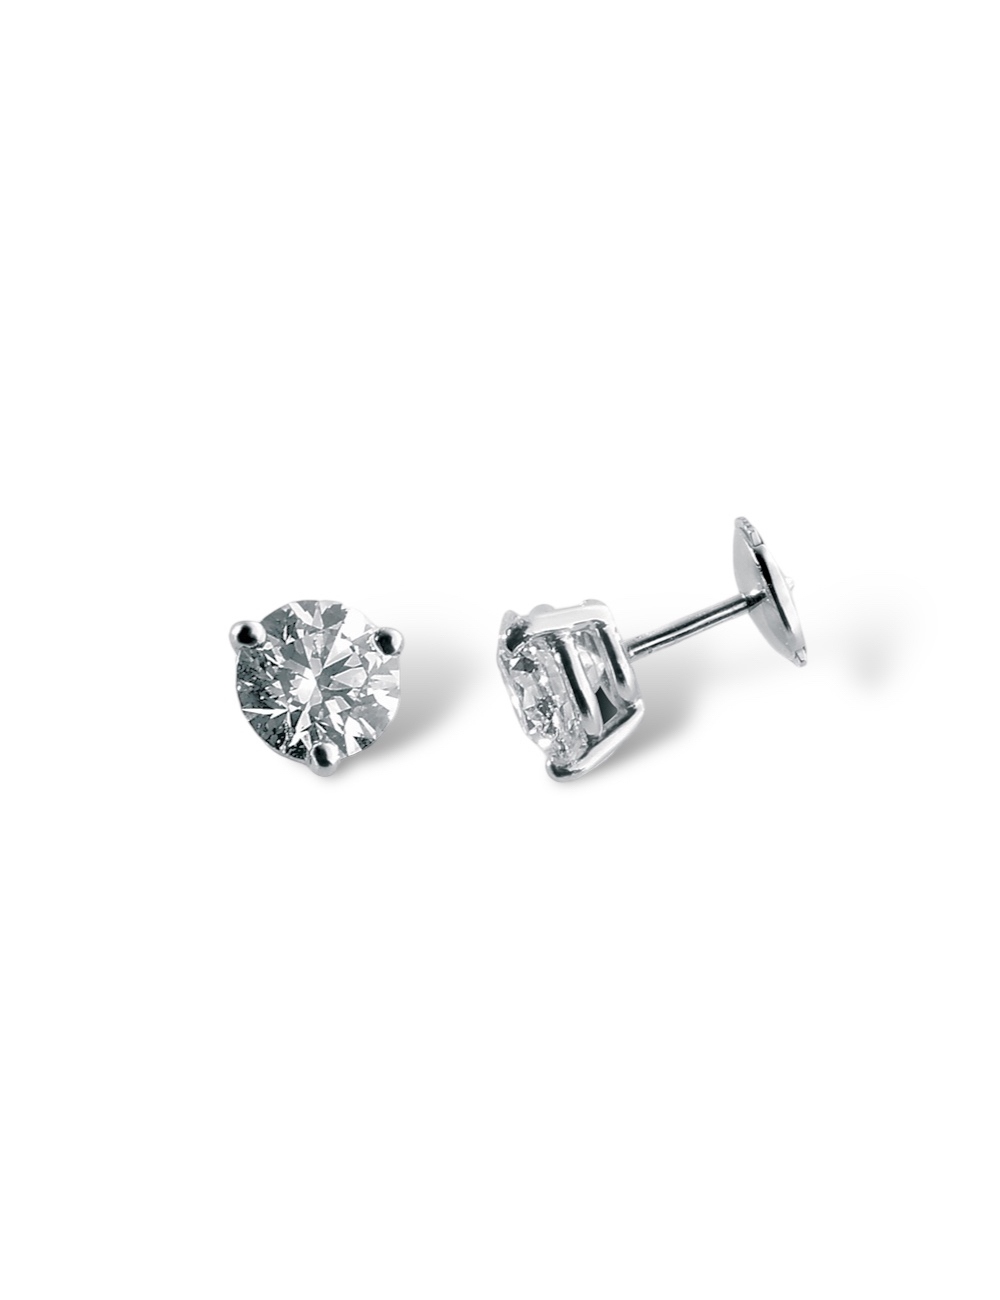 Boucles d'oreilles en diamant 0.15 carat serties en or blanc, design asymétrique élégant et moderne.